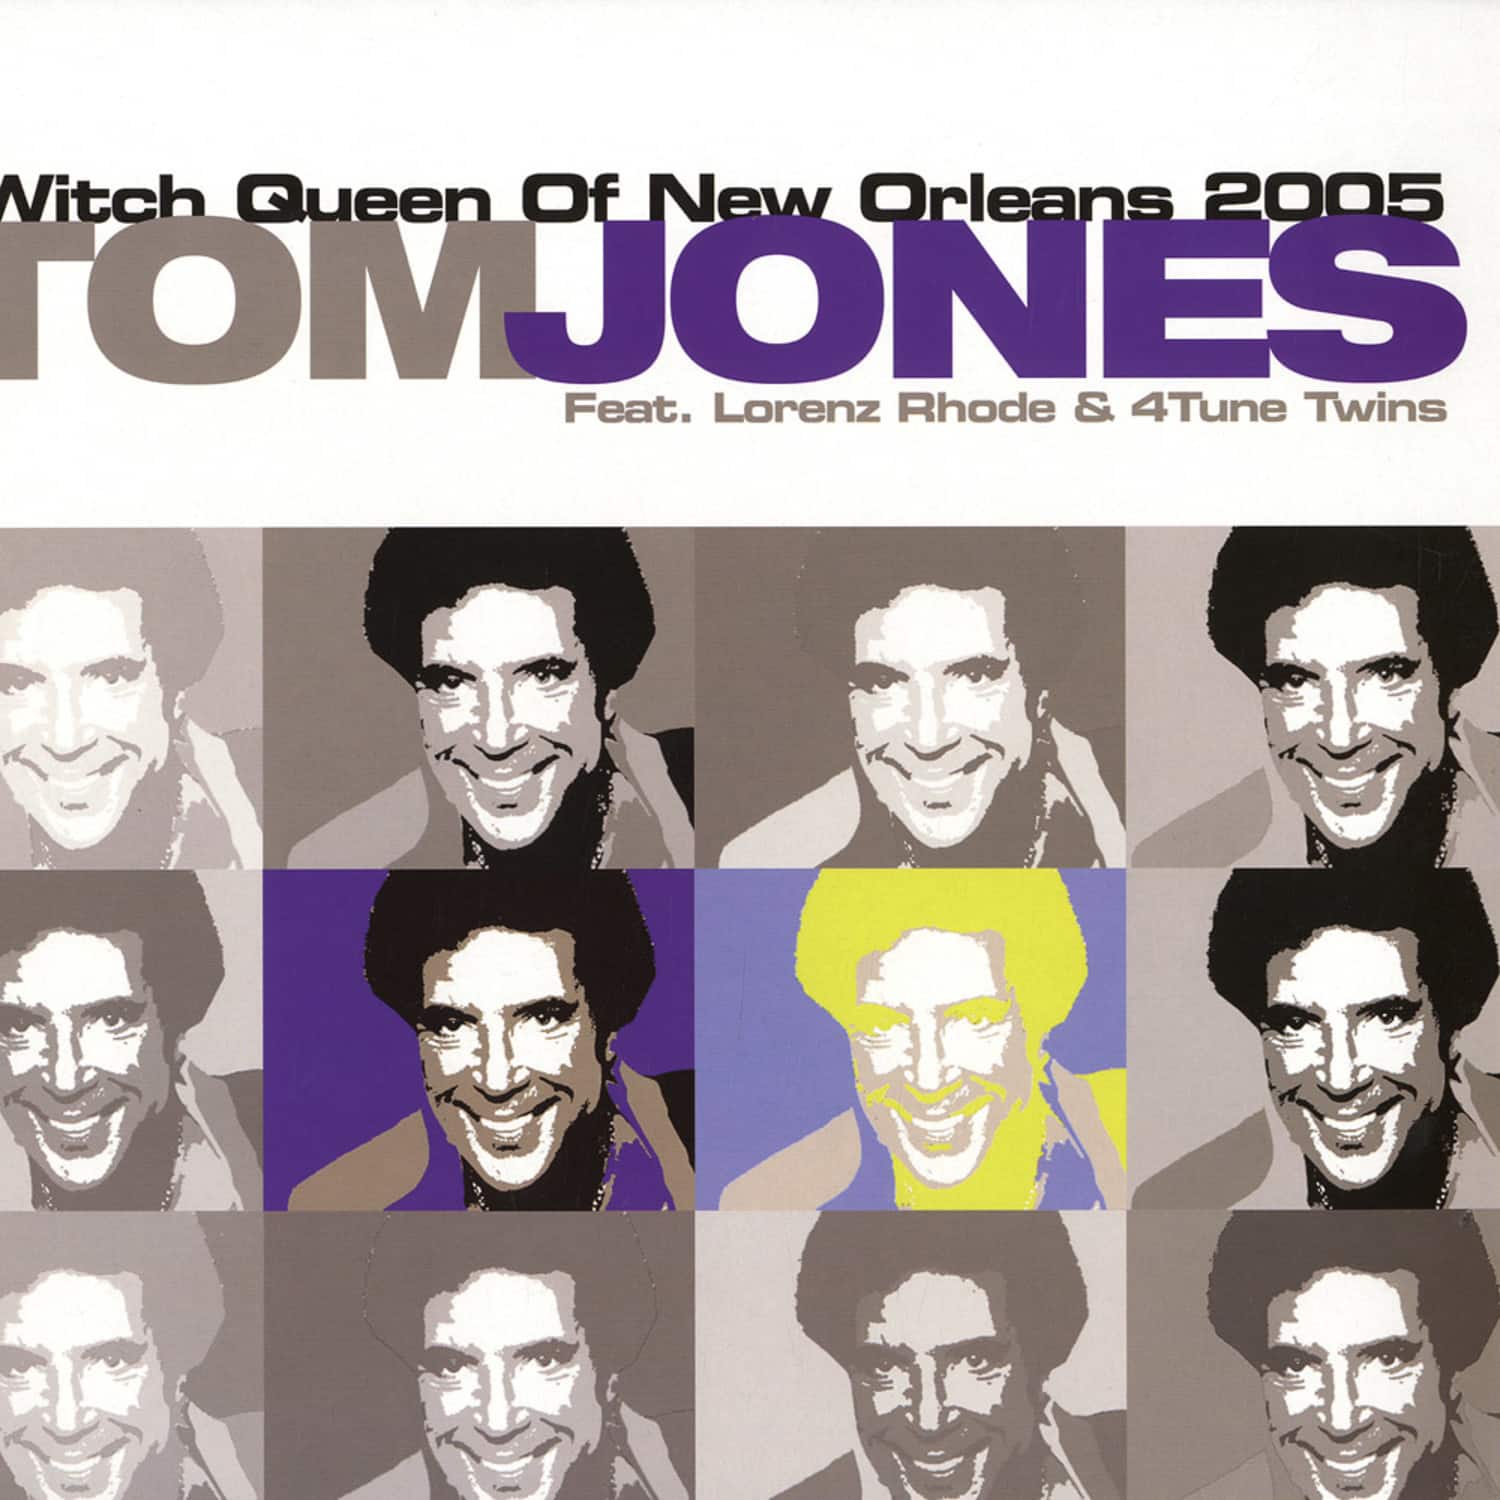 Tom Jones feat. Lorenz Rhode - WITCH QUEEN OF NEW ORLEANS 2005